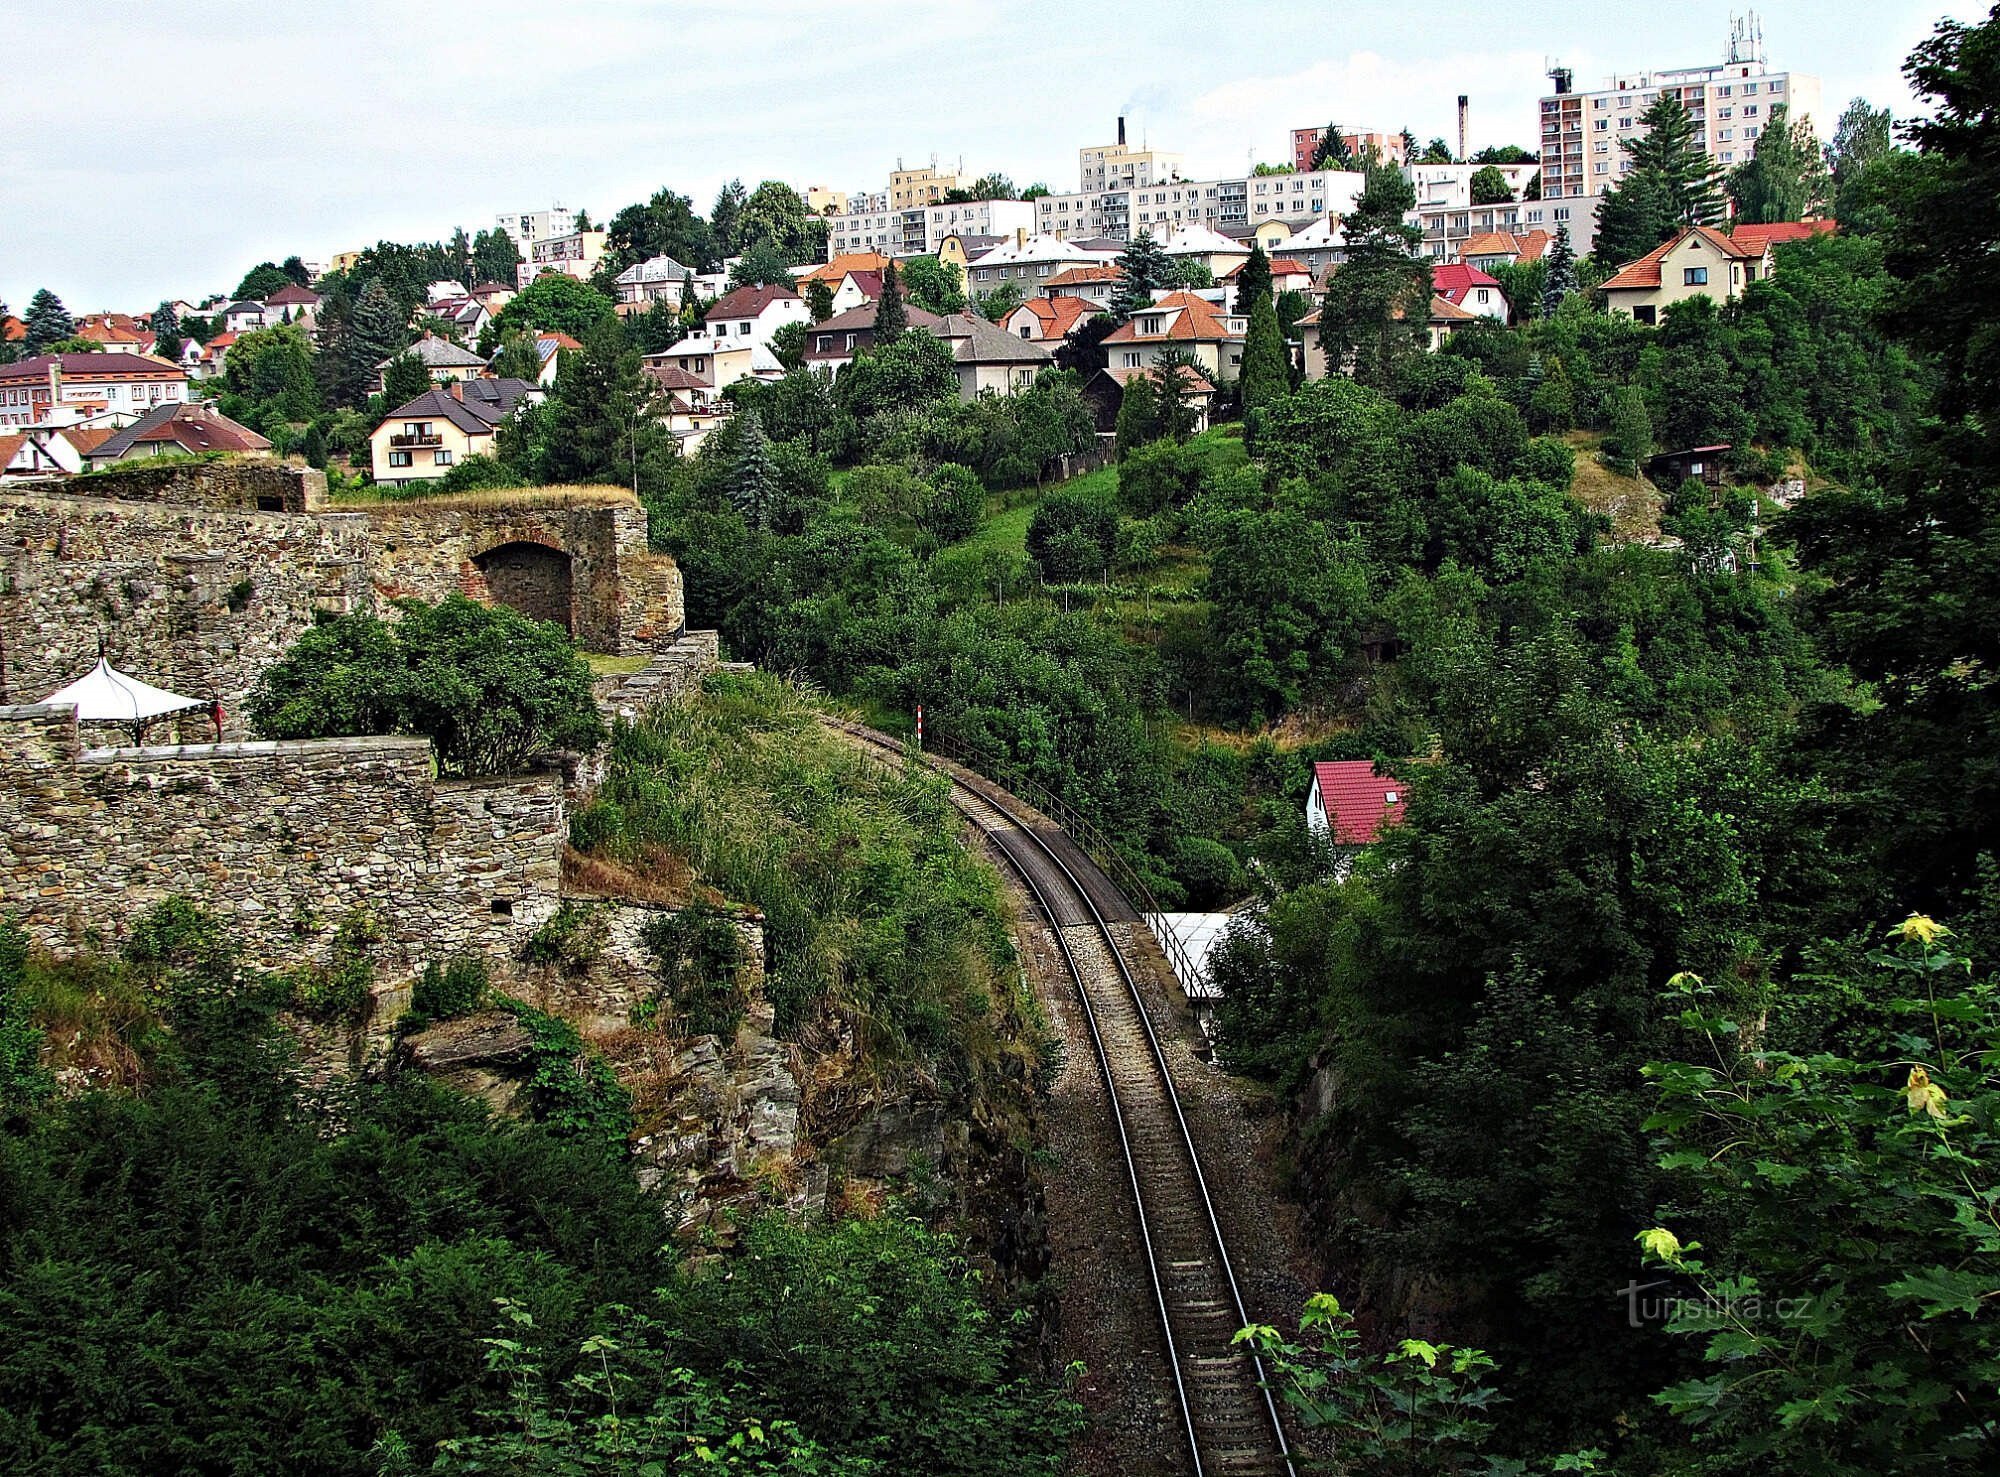 Under the Ledeč Castle